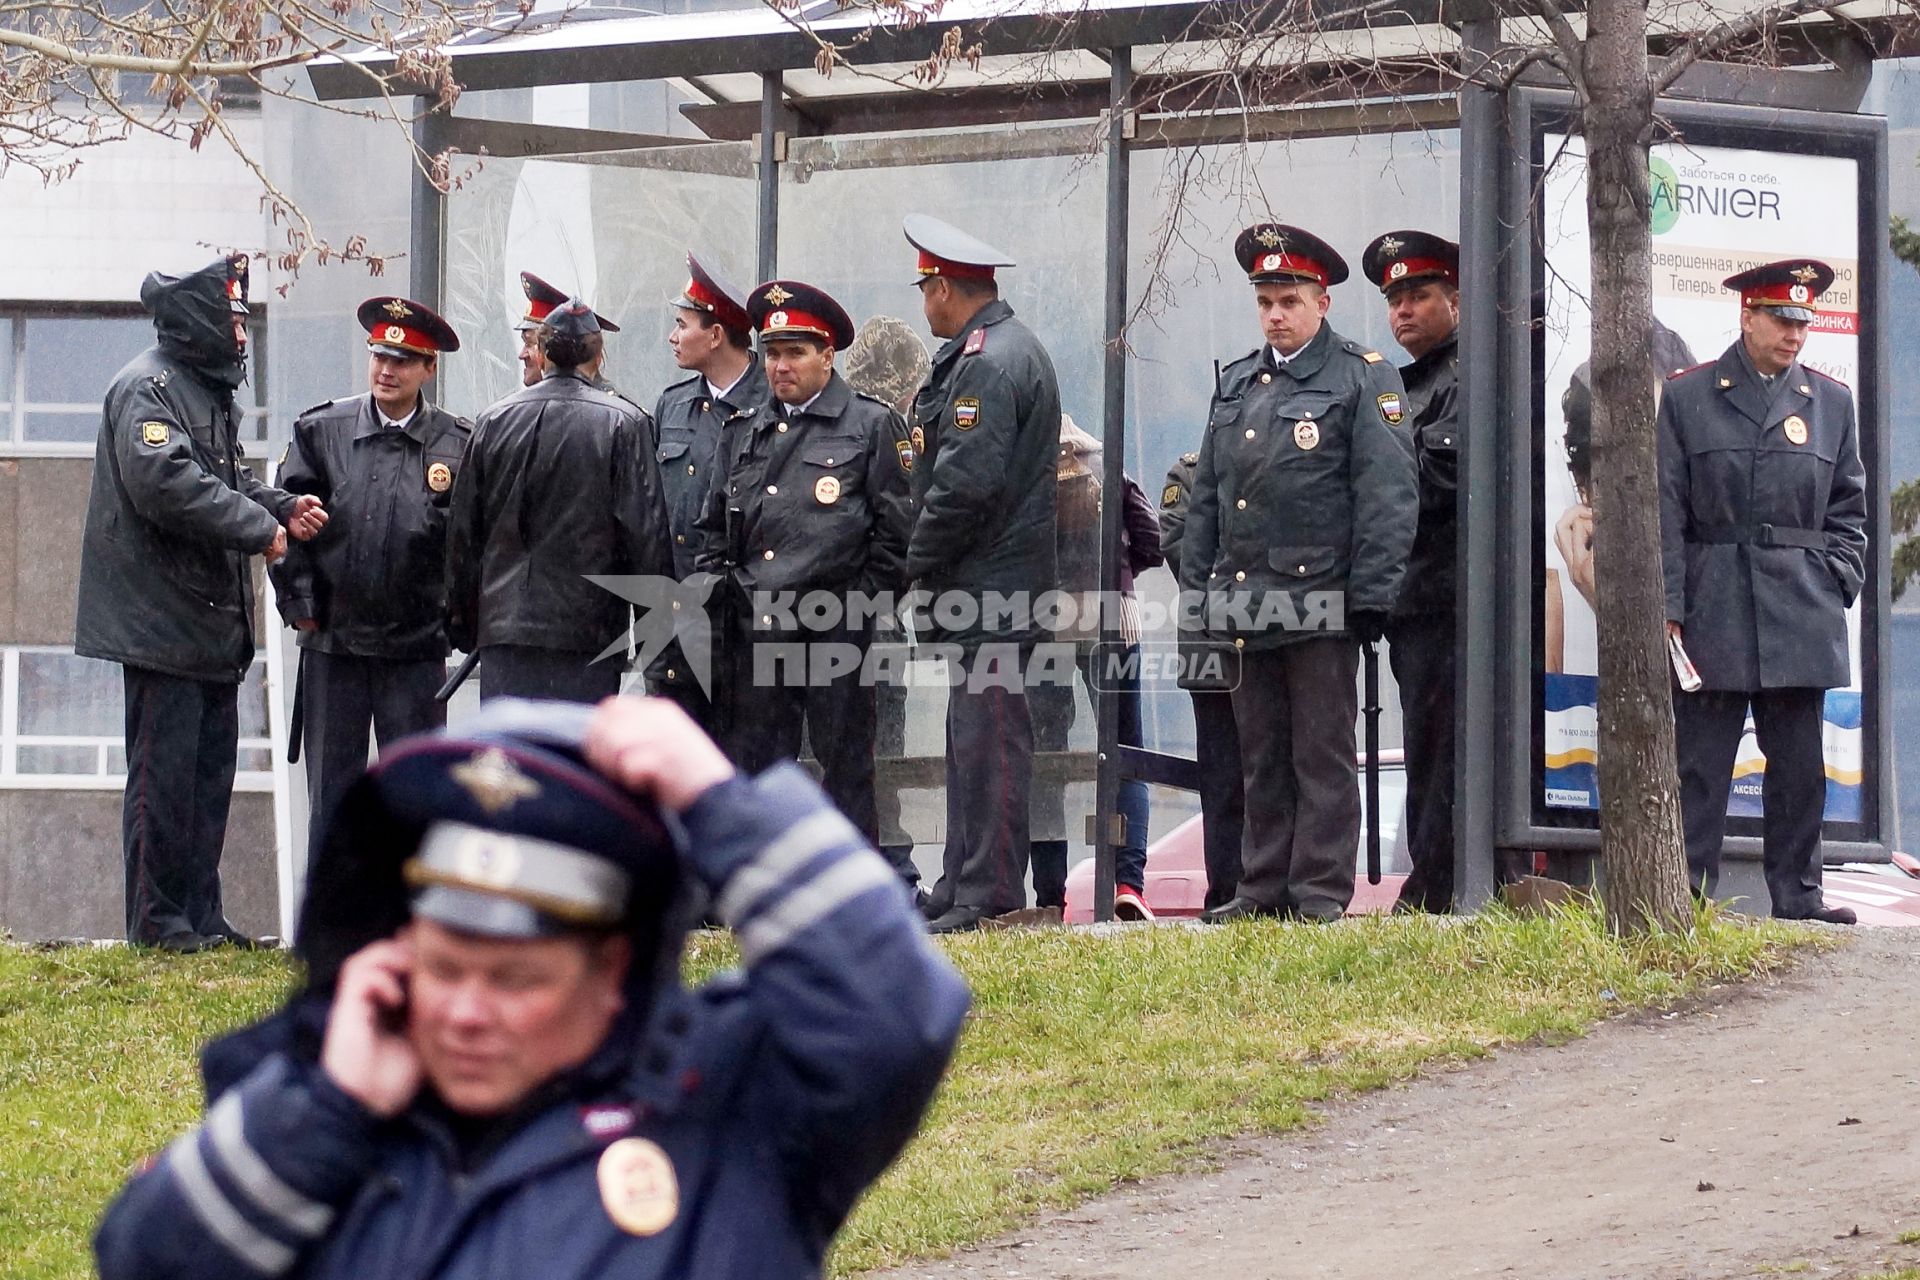 Празднование 1 мая в Екатеринбурге. На снимке: полицейские прячутся от дождя под навесом остановки общественного транспорта.